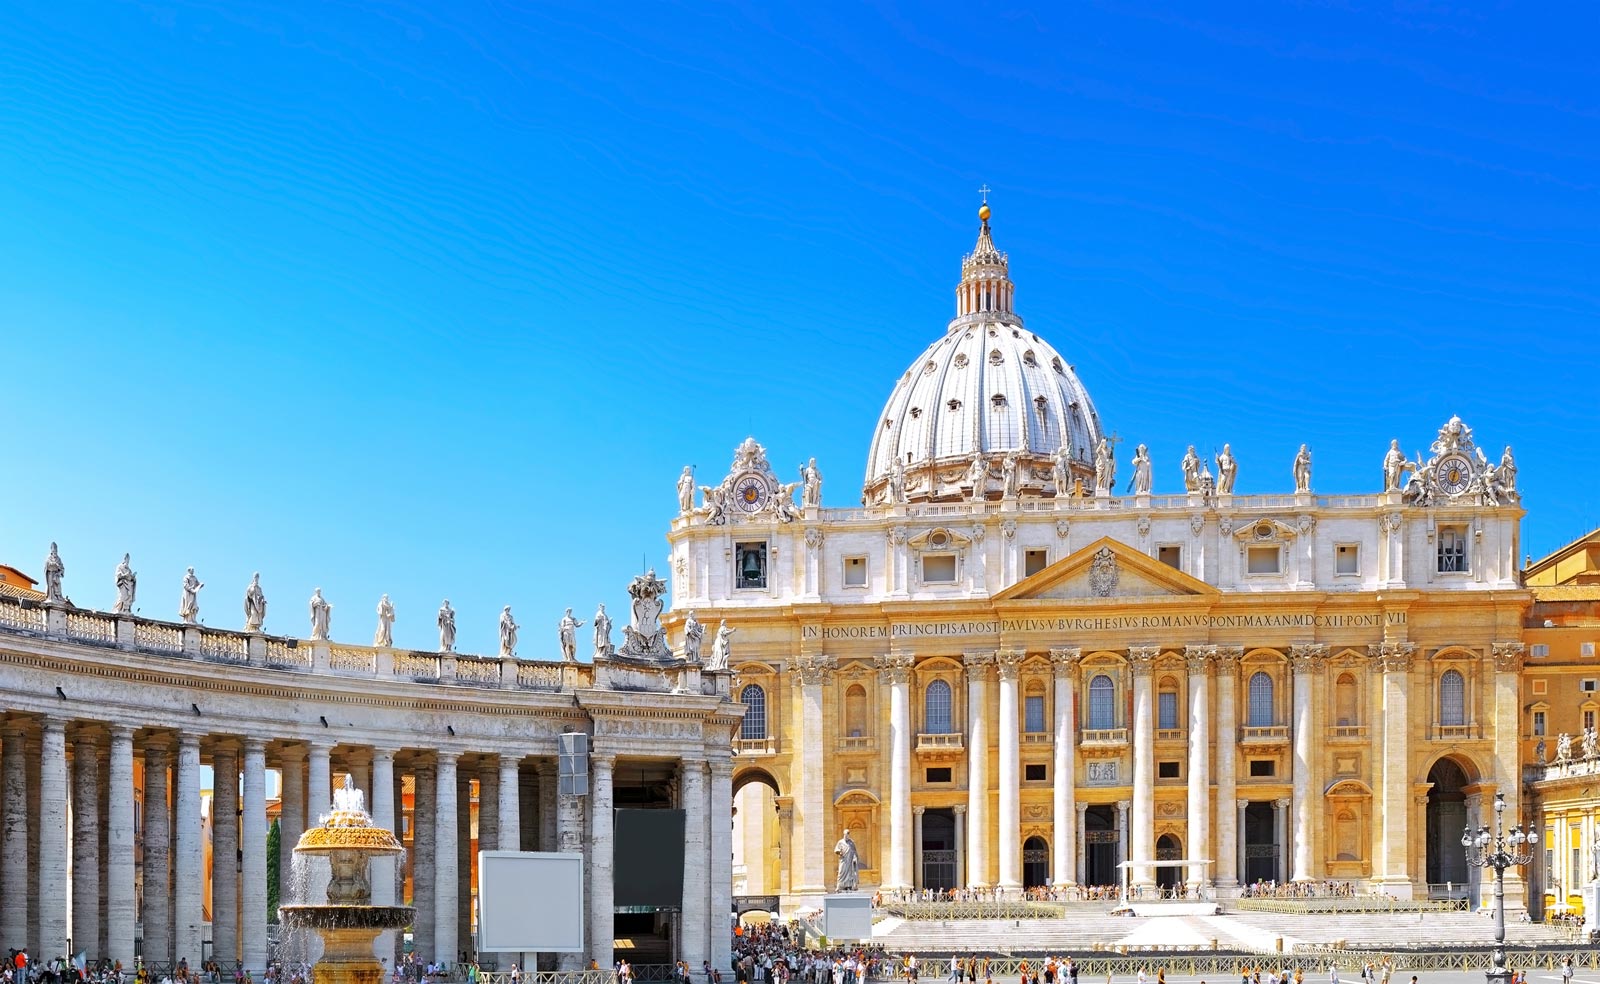 Die Vatikanstadt gehört zu den bedeutendsten religiösen und kulturellen Stätten und zieht jährlich Millionen von Besuchern an. Sie ist ein Muss in Rom.